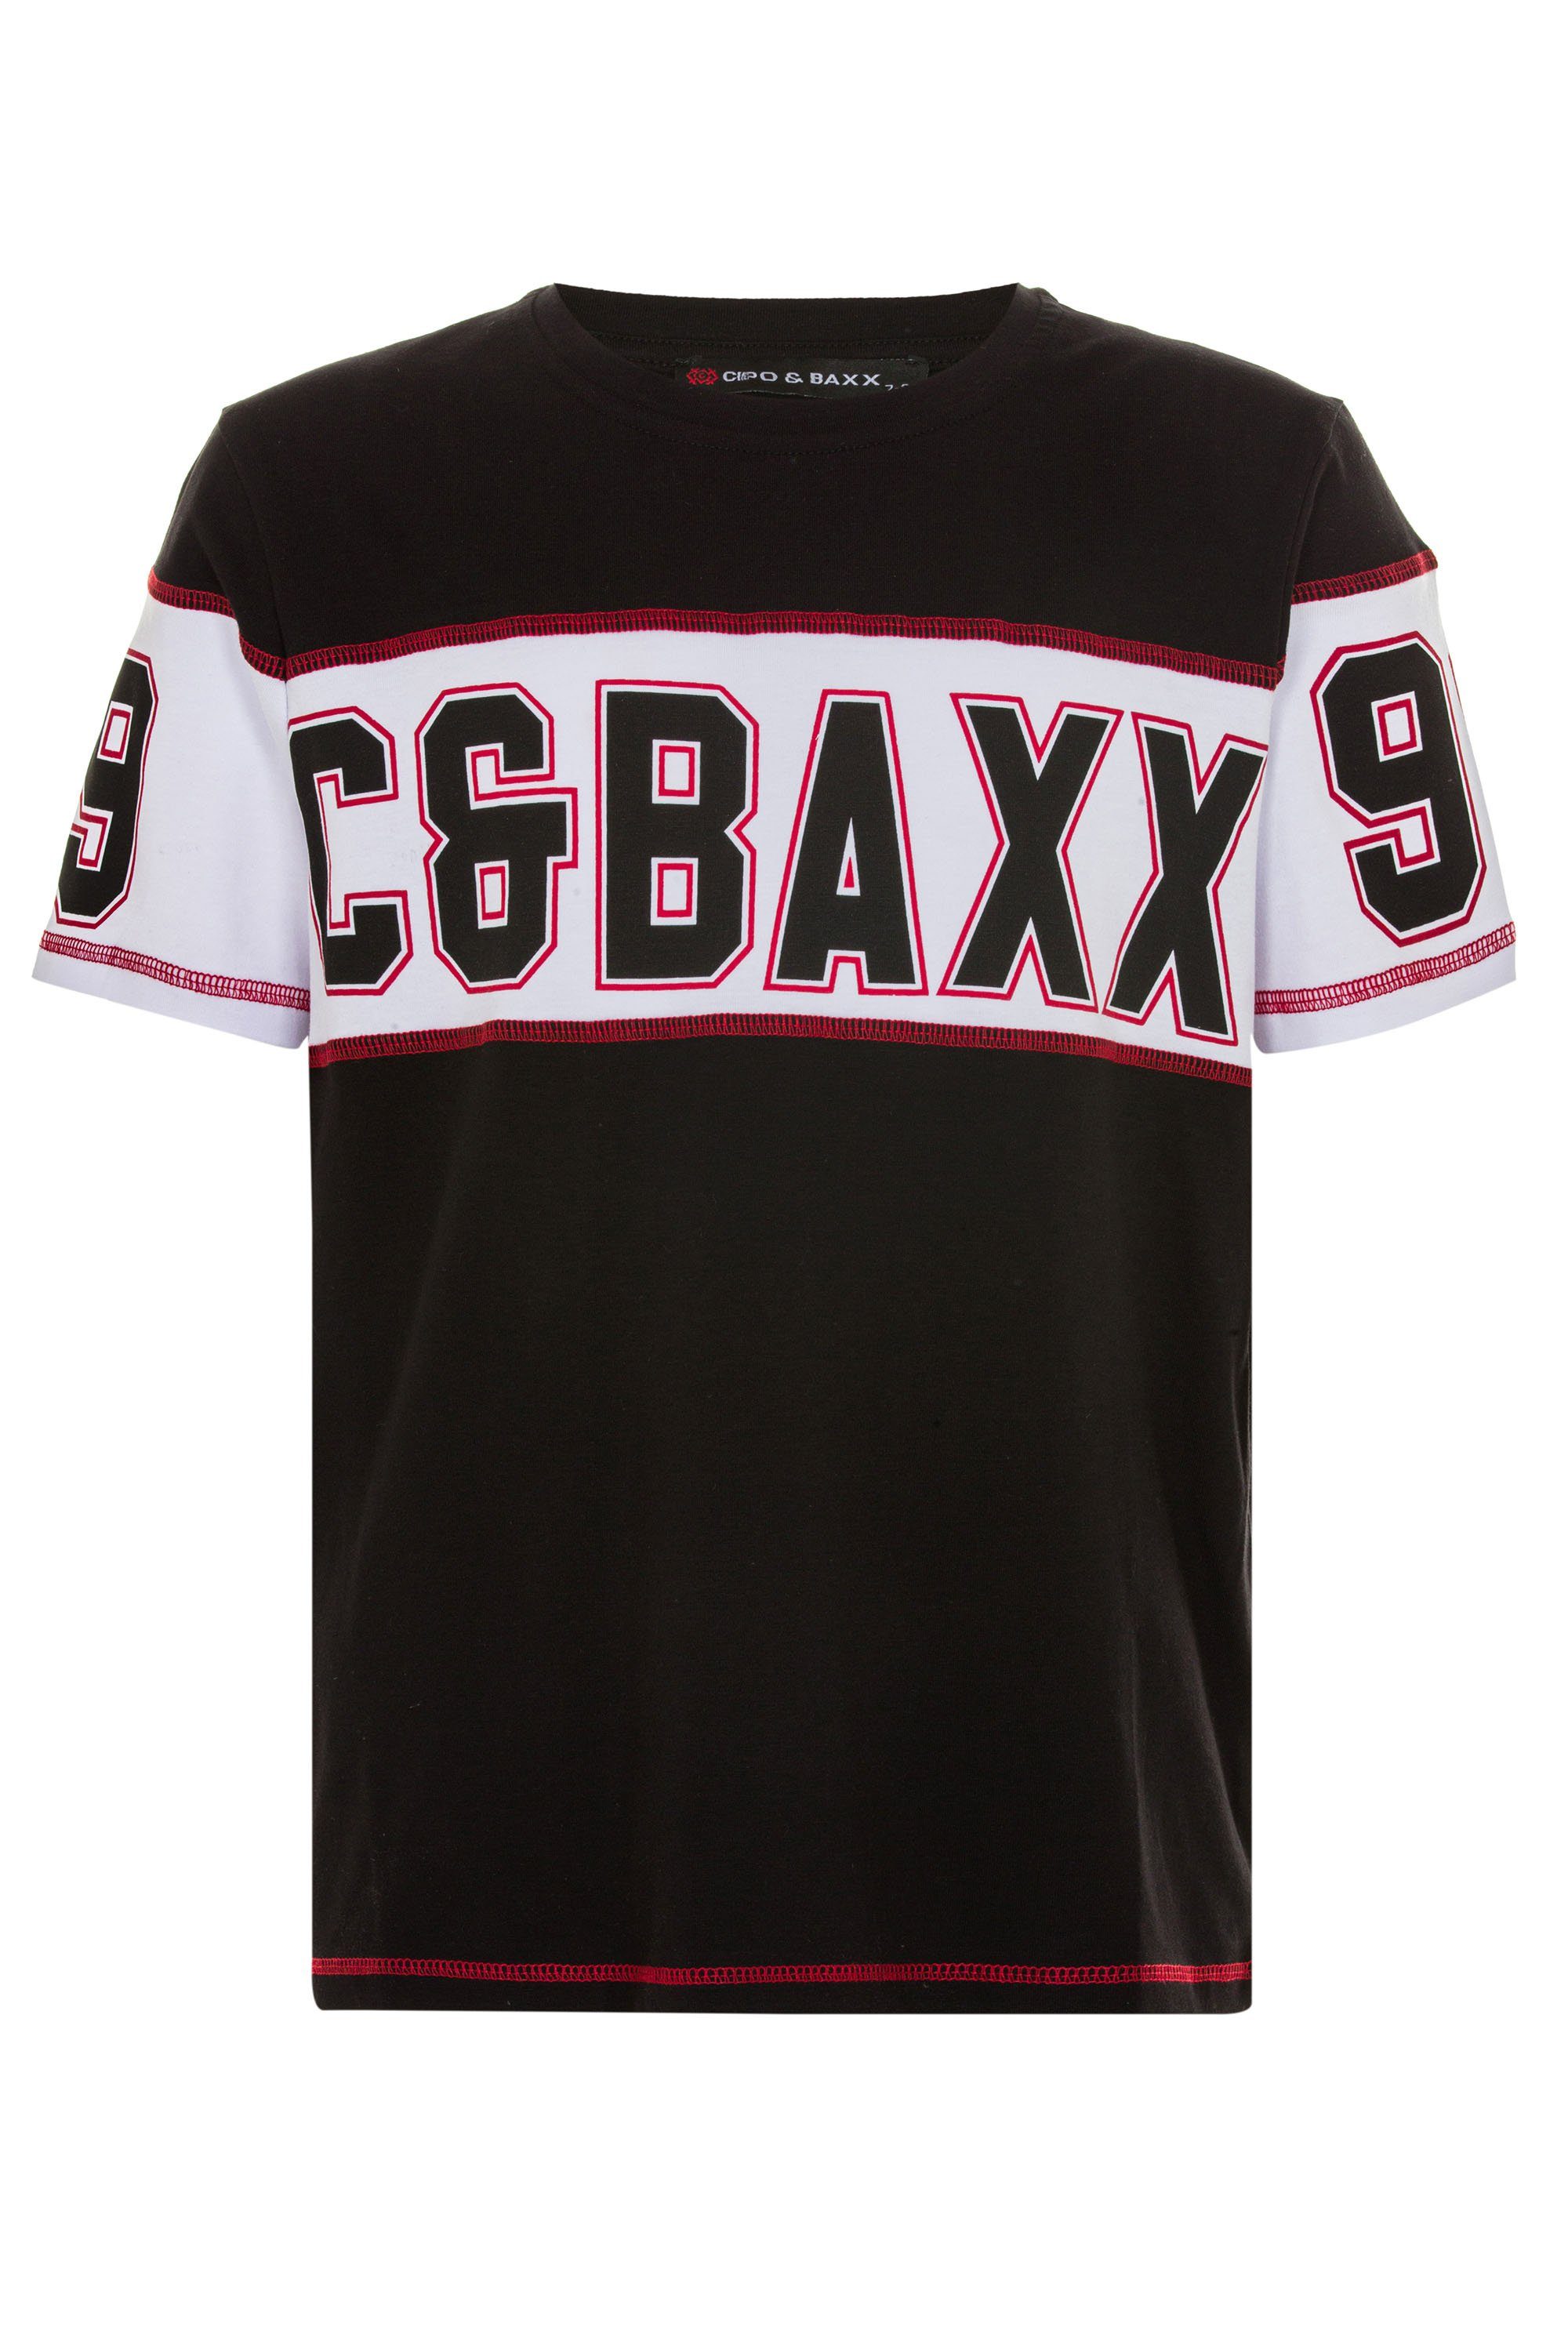 T-Shirt Baxx Markenprint Cipo & coolem mit schwarz